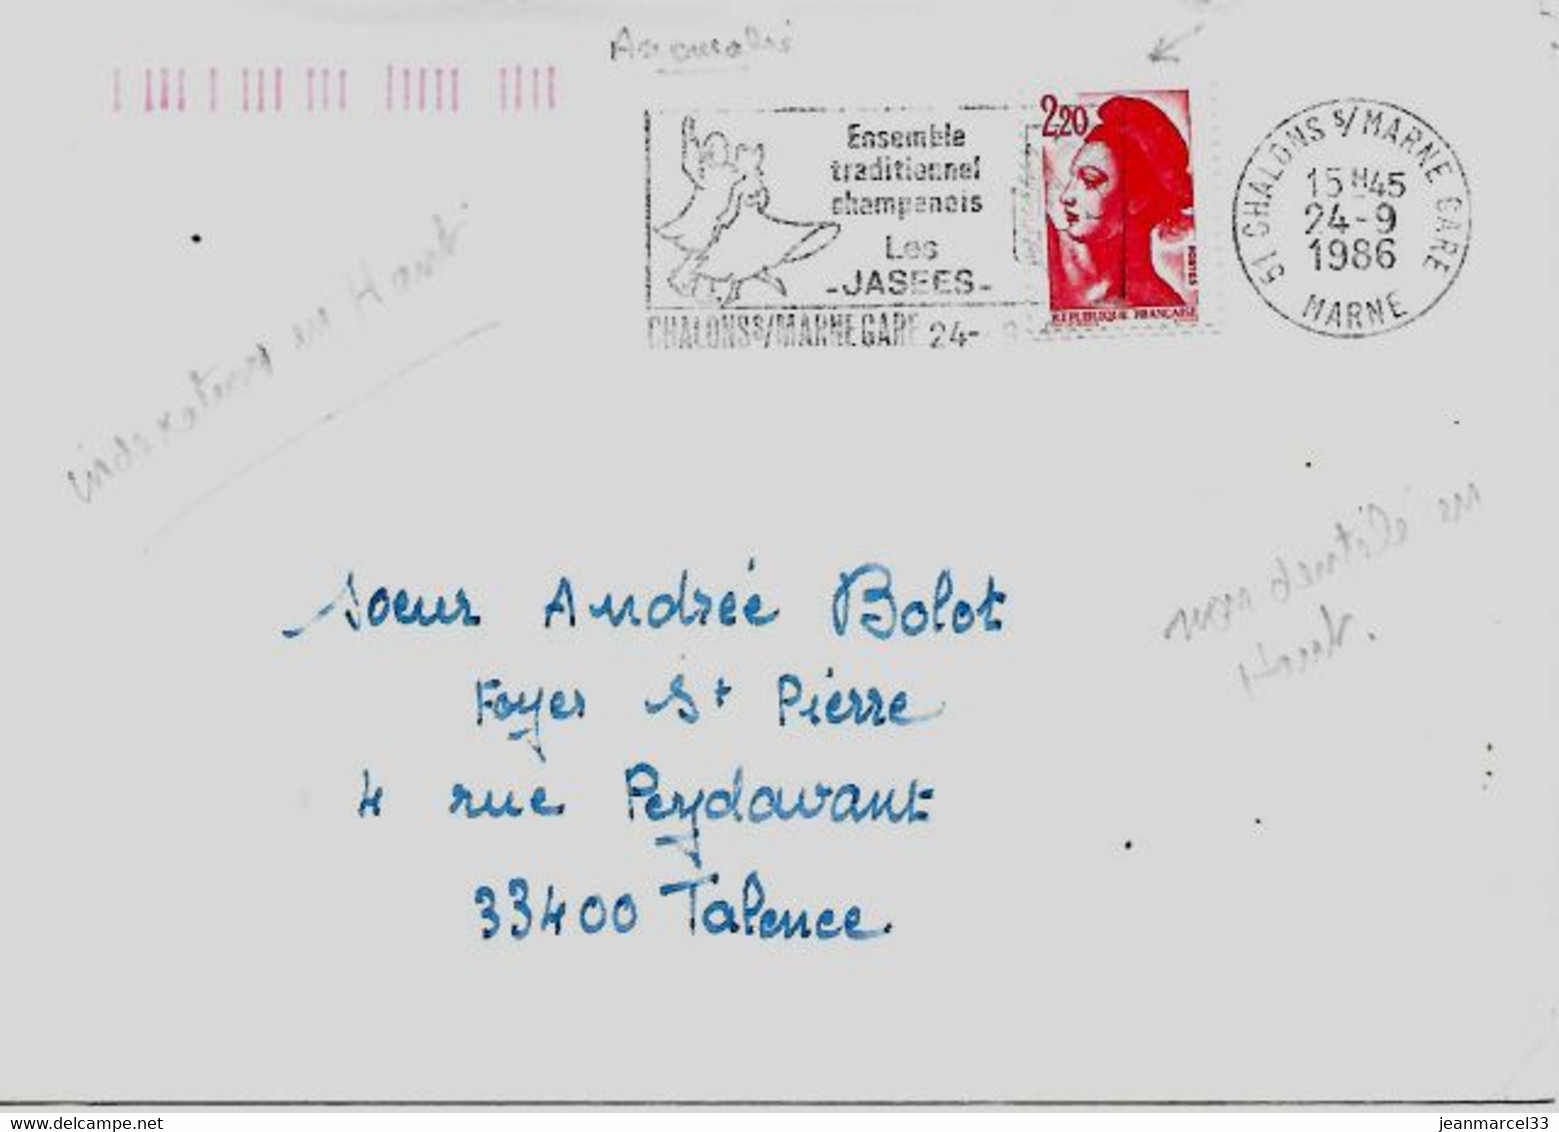 Curiosité 51 Chalons S/Marne Gare 24-9 1986, Timbre Non Dentelé En Haut, Indexation Orange En Haut à Gauche - Briefe U. Dokumente